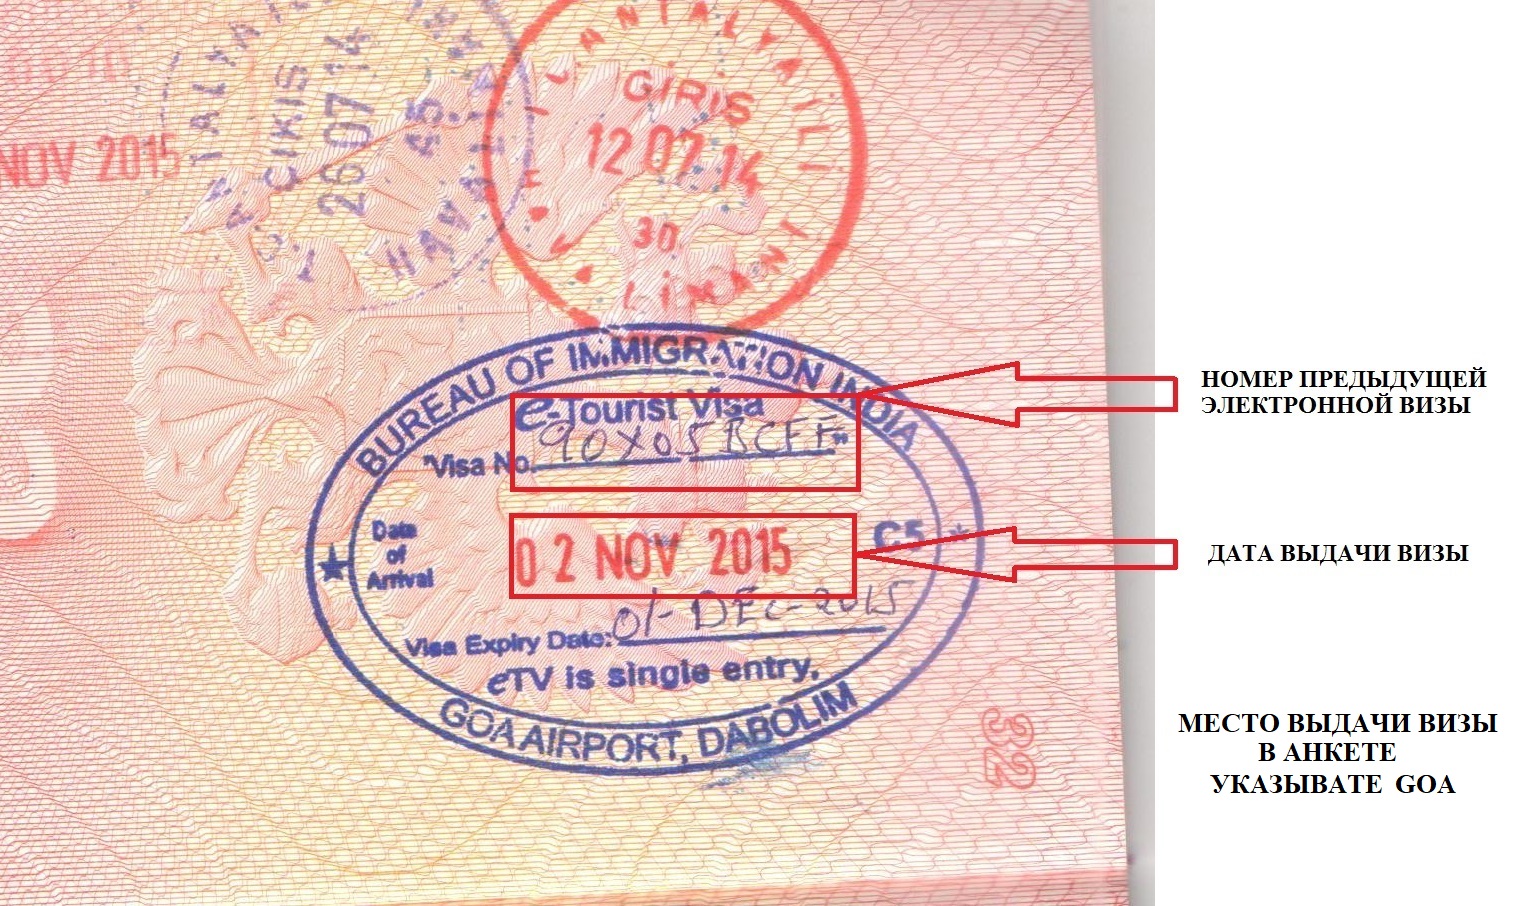 Сайт электронной визы. Номер визы. Номер электронной визы. Номер индийской визы. Штамп виза.